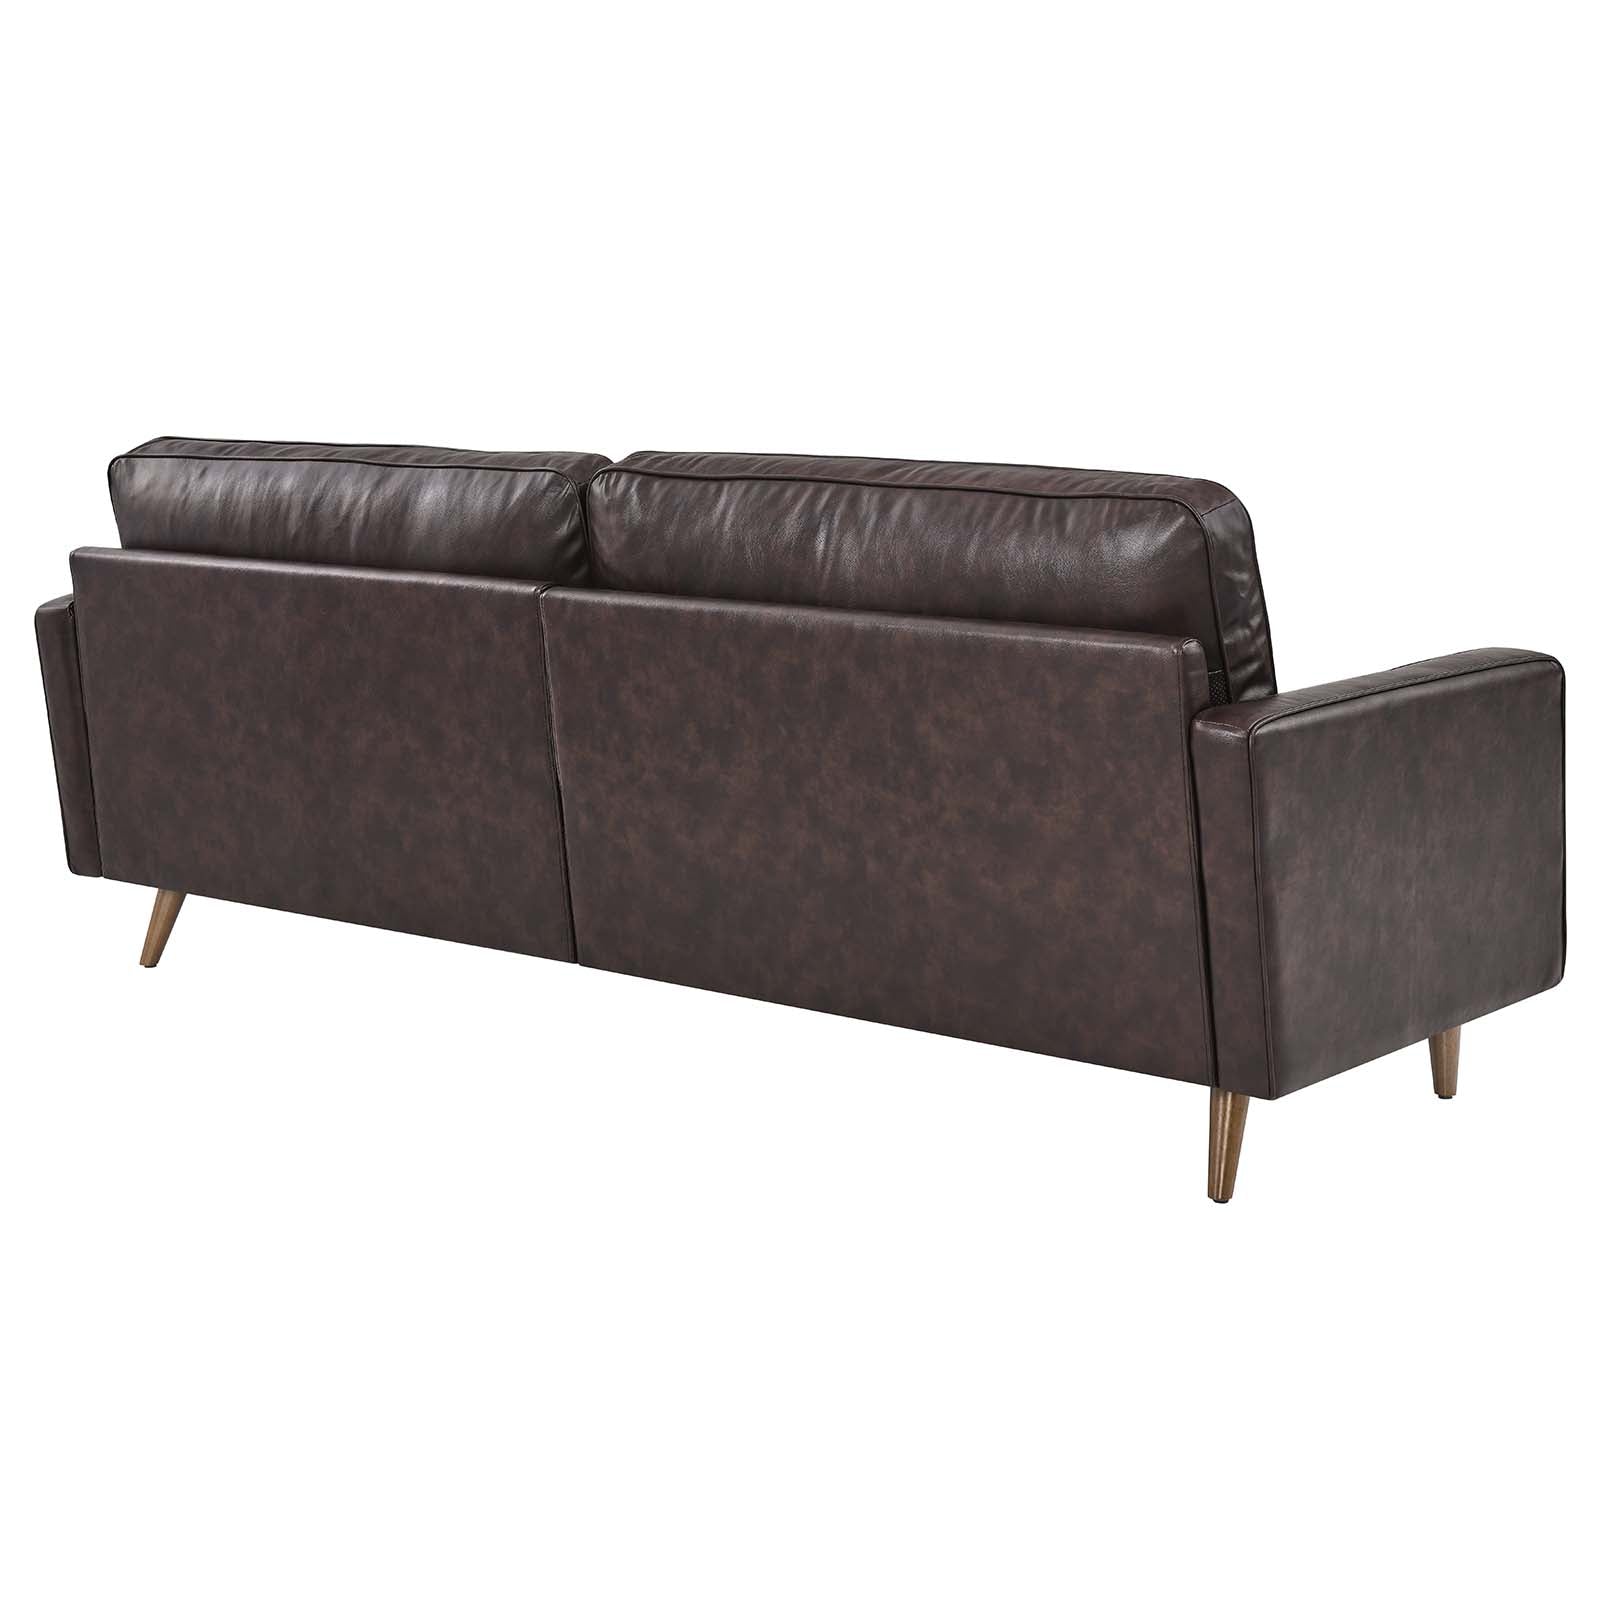 Modway Sofas & Couches - Valour 88" Leather Sofa Brown